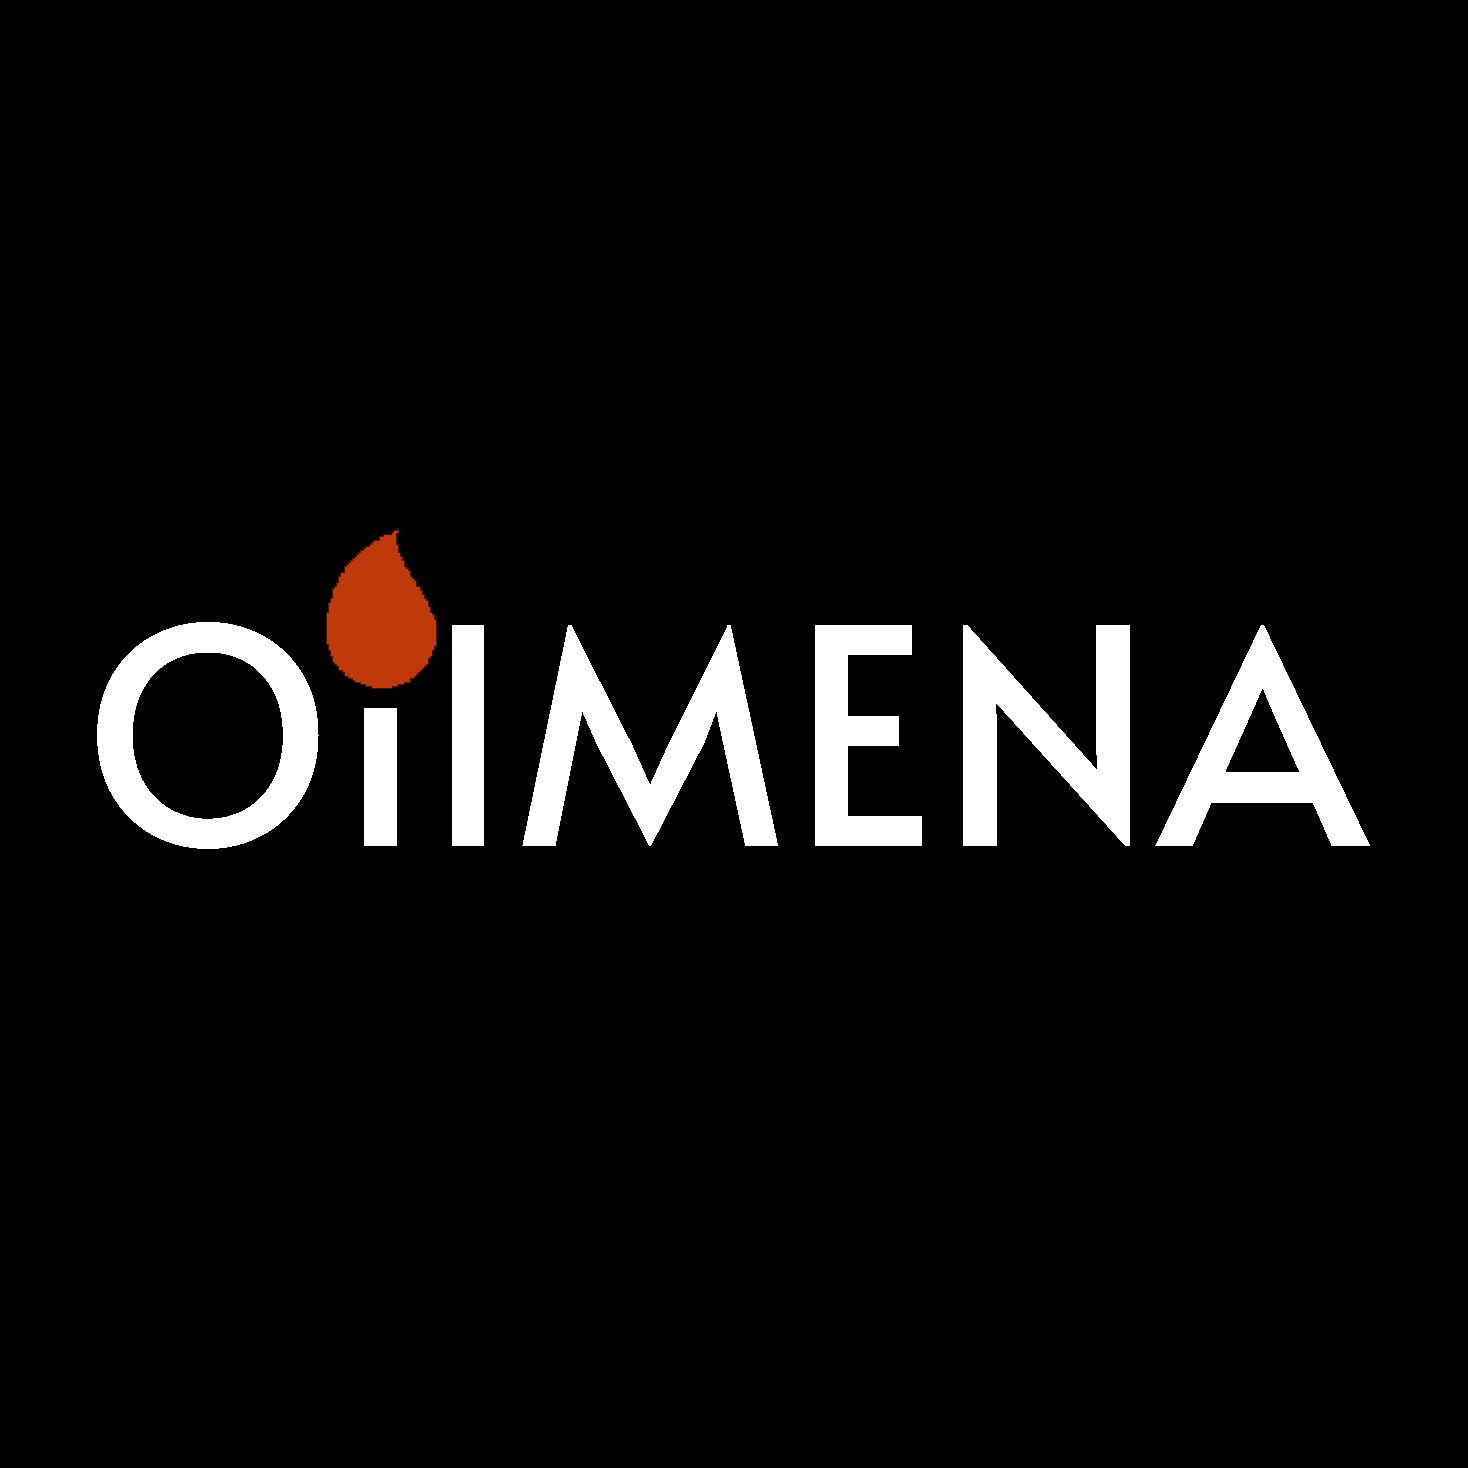 OilMENA News Logo